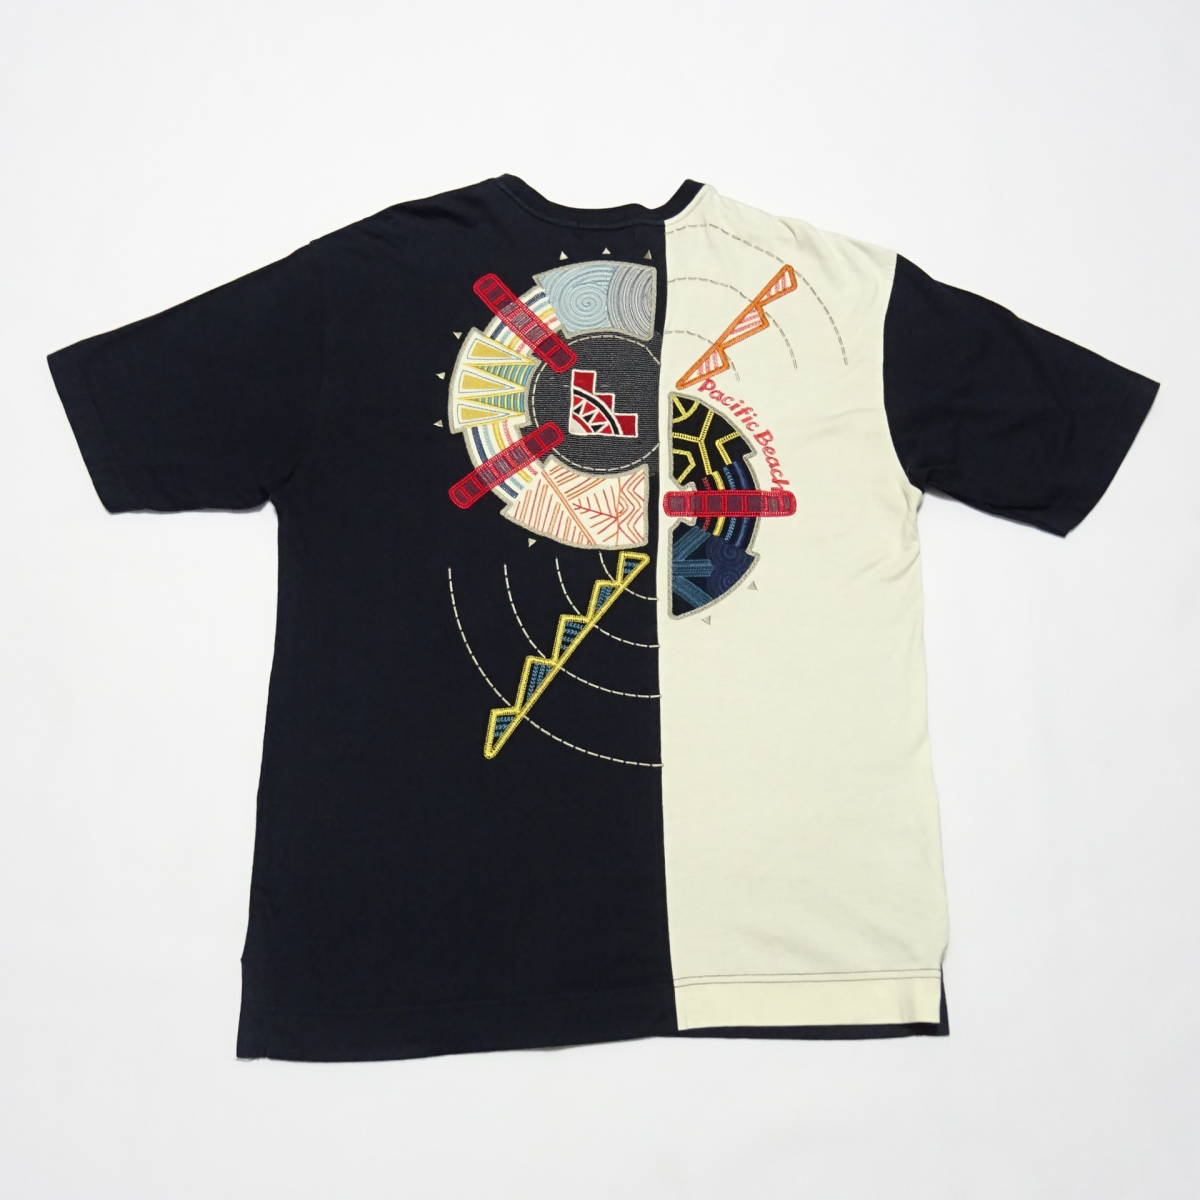 変更OK santafe サンタフェ 刺繍シャツ サイズ4 ブラック 日本製 匿名 